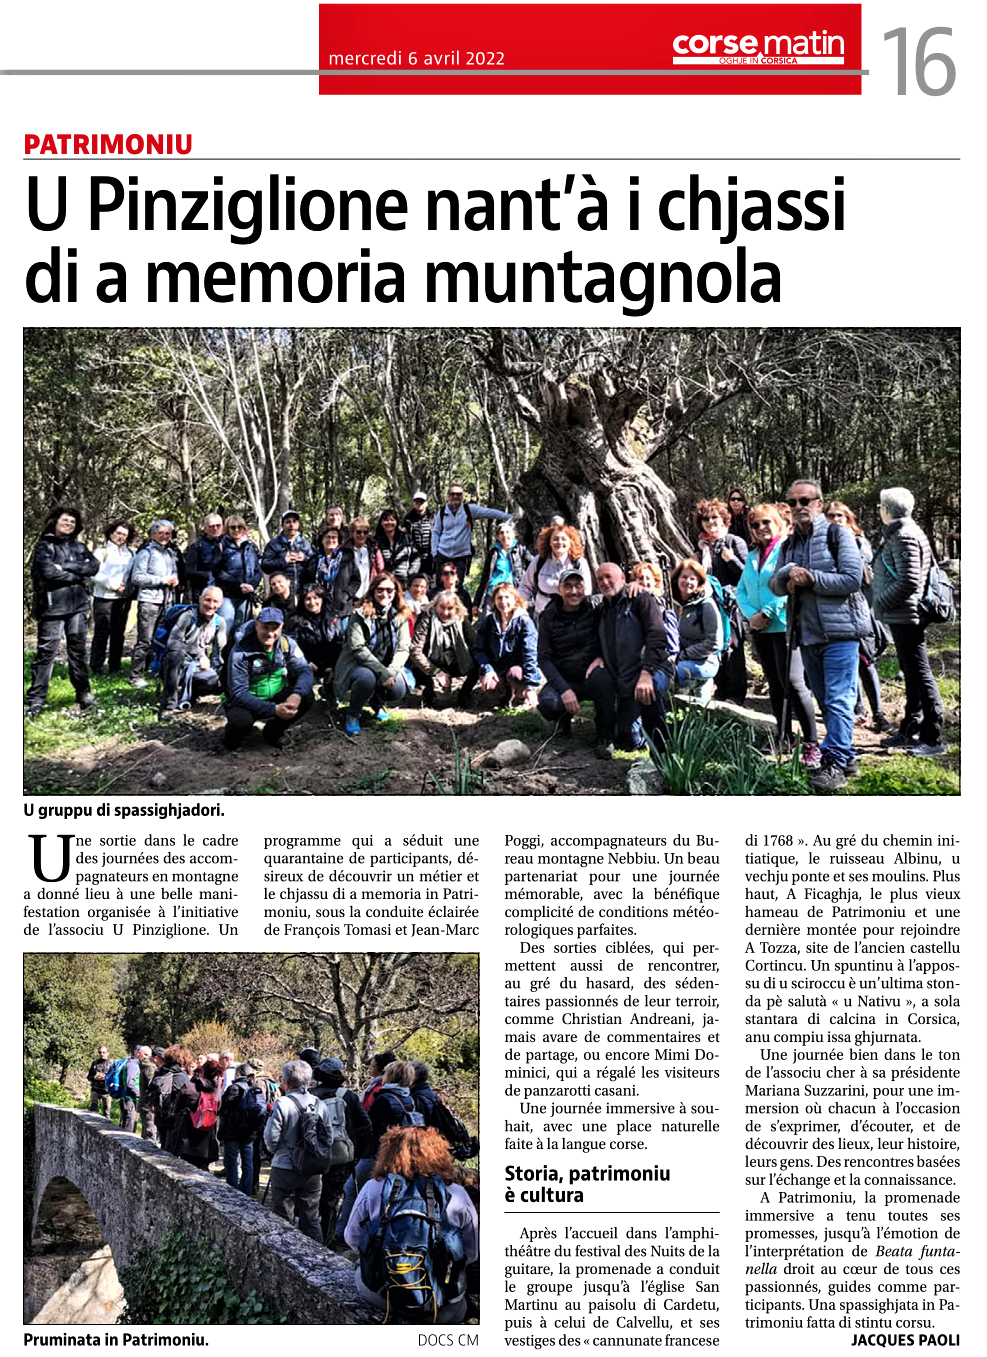 U Pinziglione in Patrimoniu - C.M. du 06_04_22